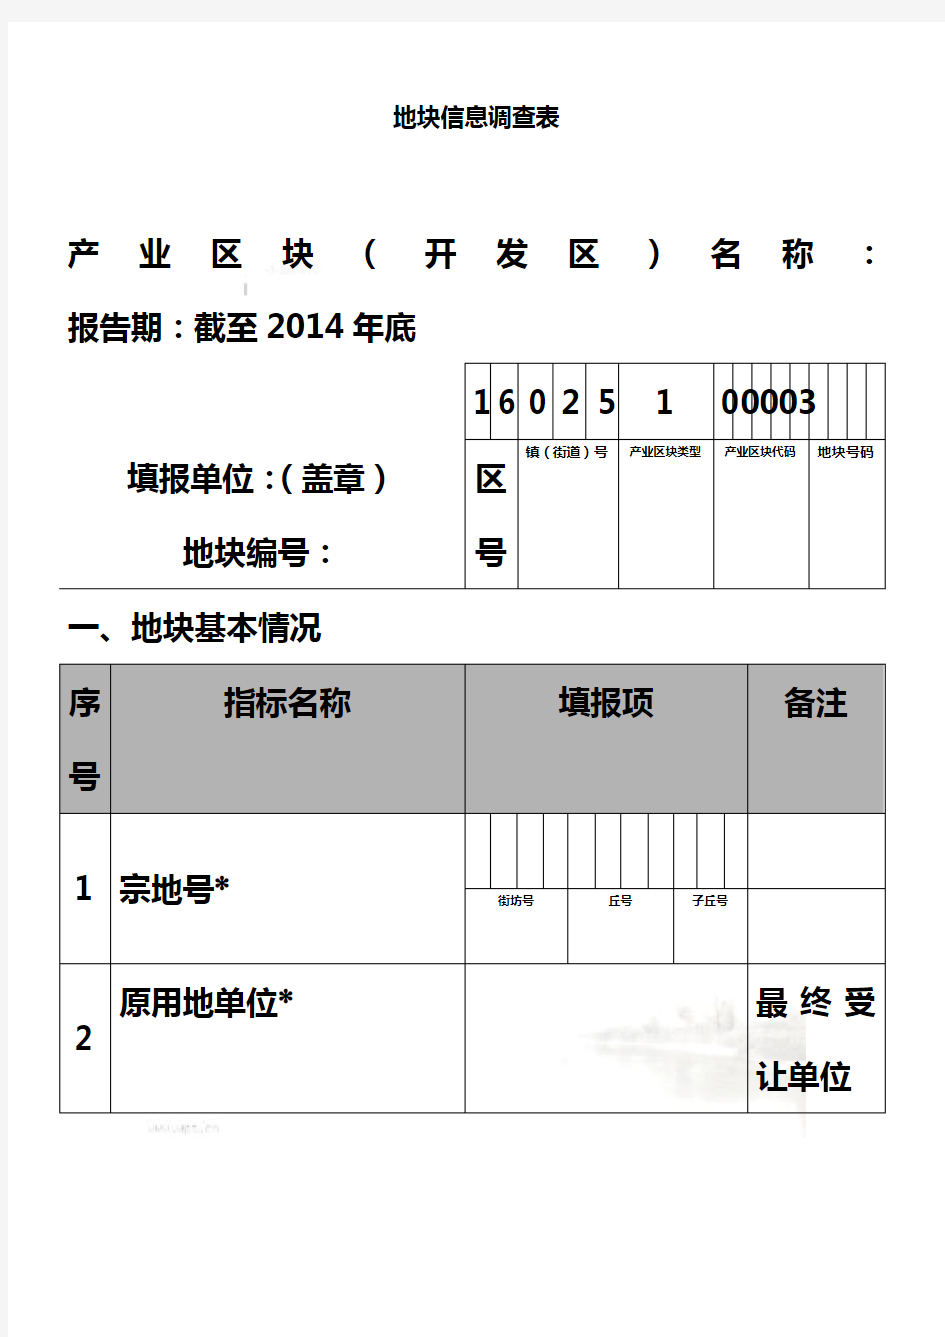 地块信息调查表-上海化学工业区